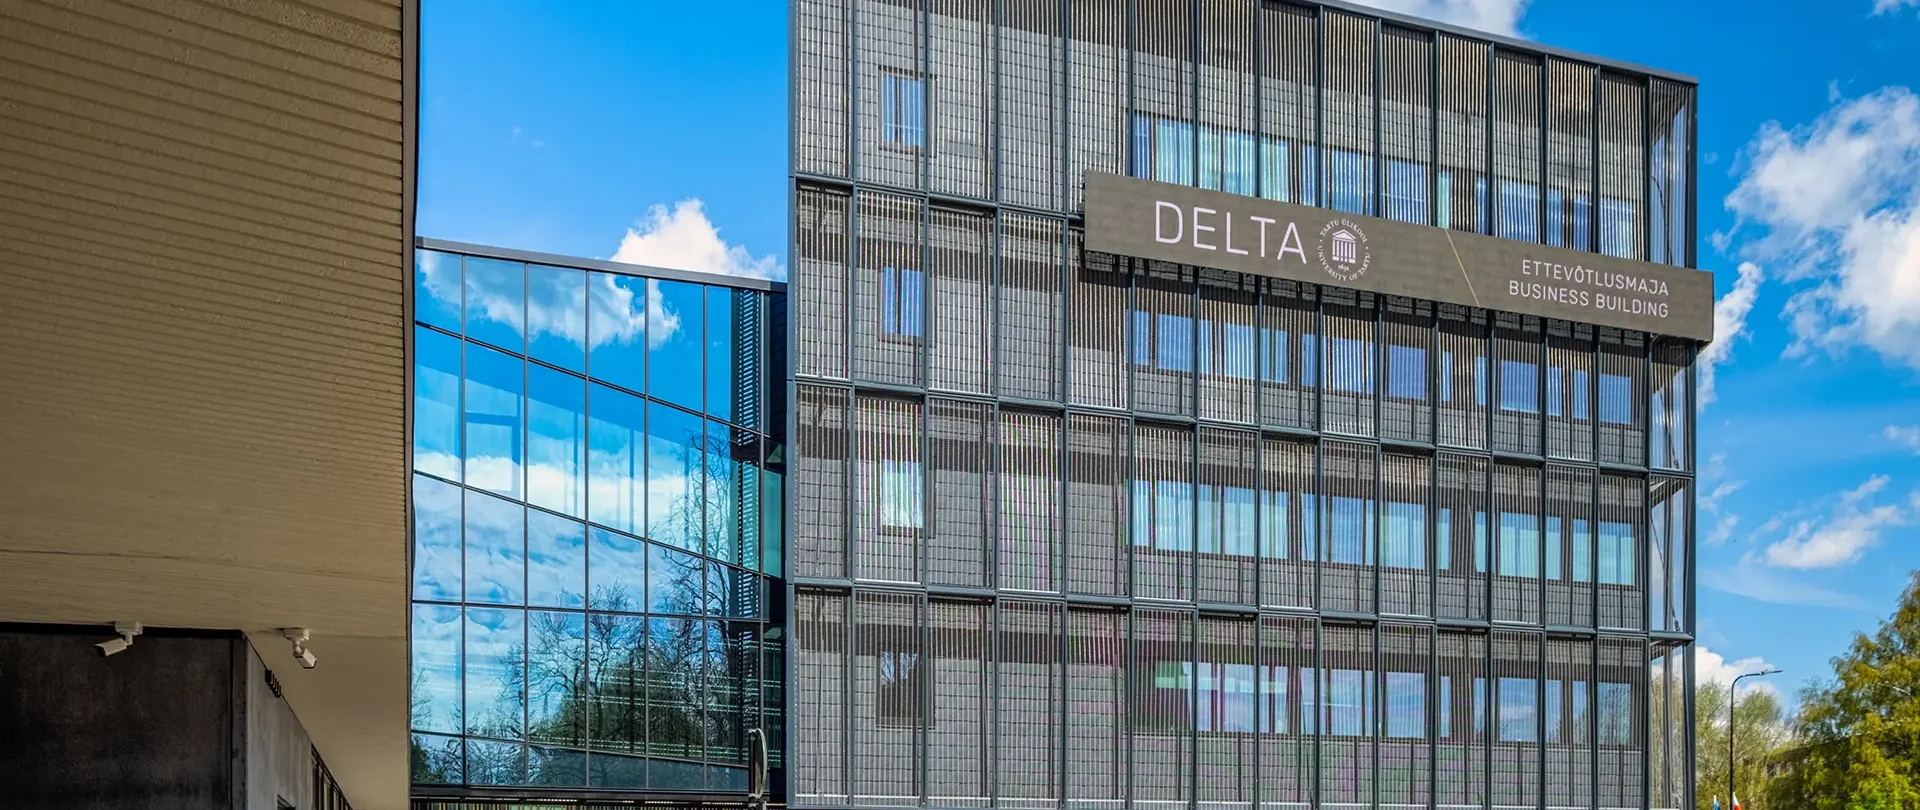 Parmet Tartu Ülikooli Delta hoone fassaad arhitektuurifoto